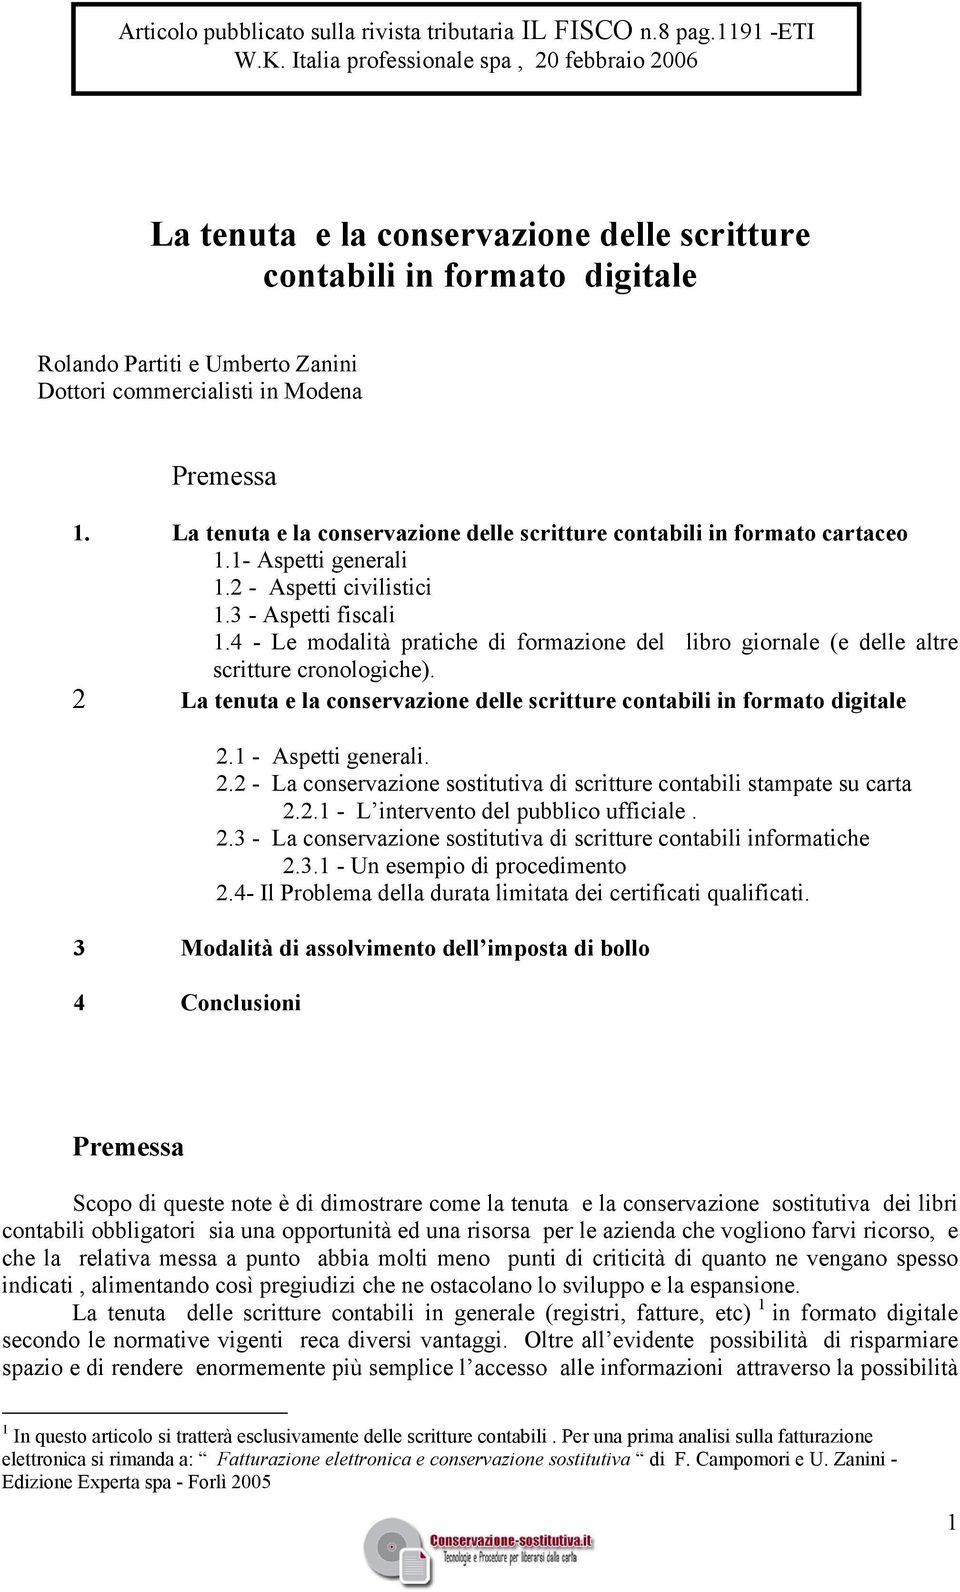 La tenuta e la conservazione delle scritture contabili in formato cartaceo 1.1- Aspetti generali 1.2 - Aspetti civilistici 1.3 - Aspetti fiscali 1.